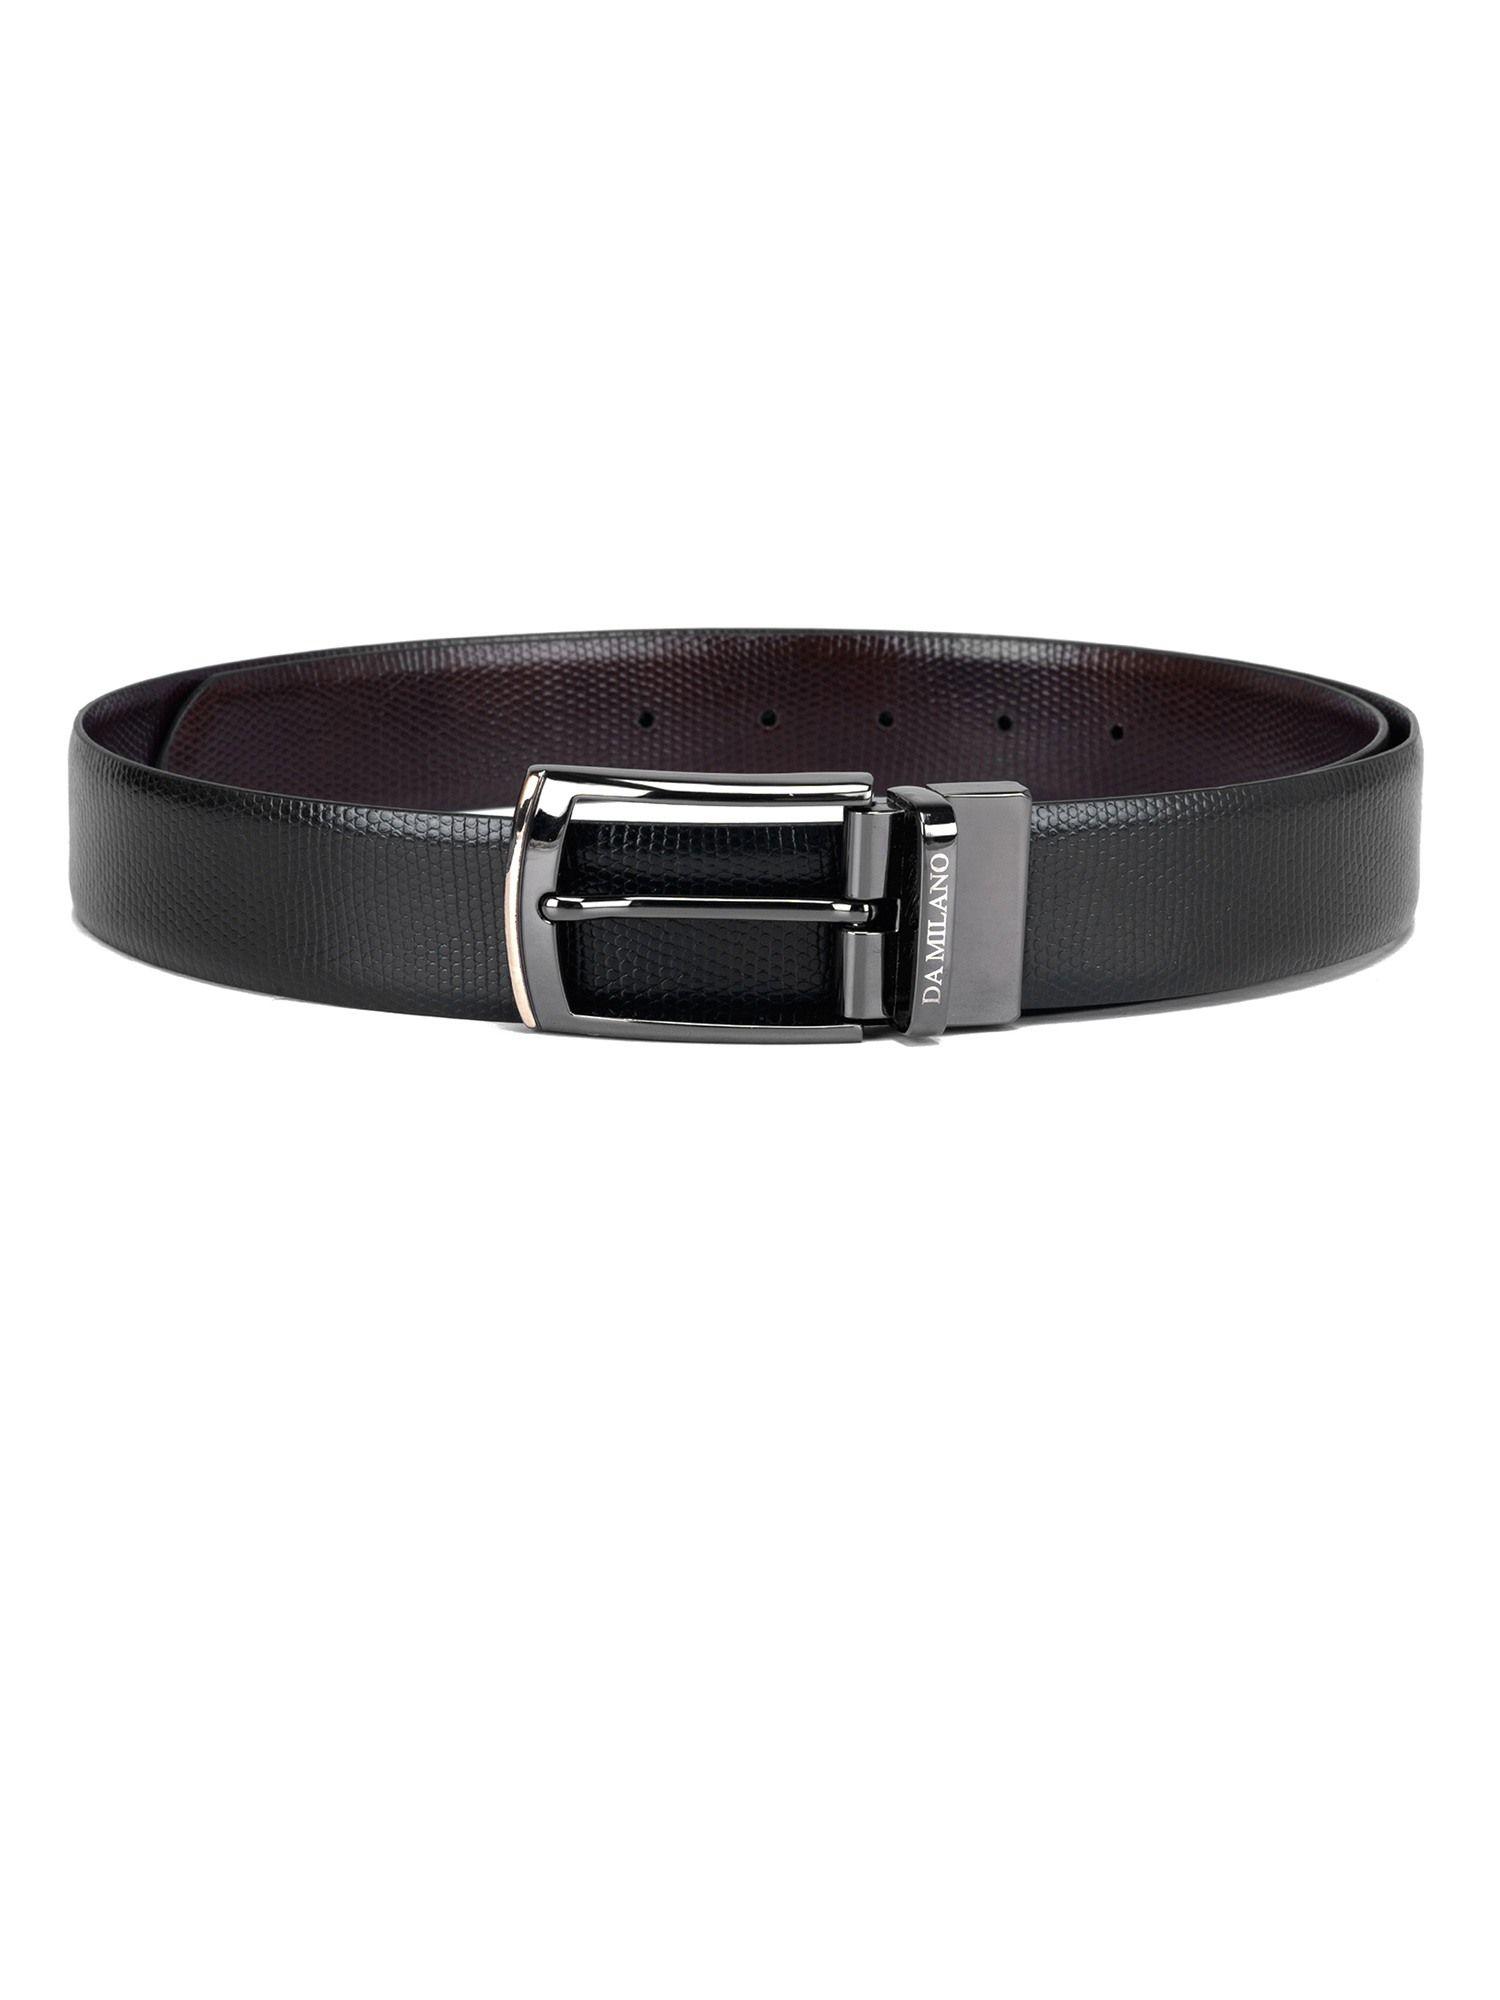 genuine leather black & brown reversible belt